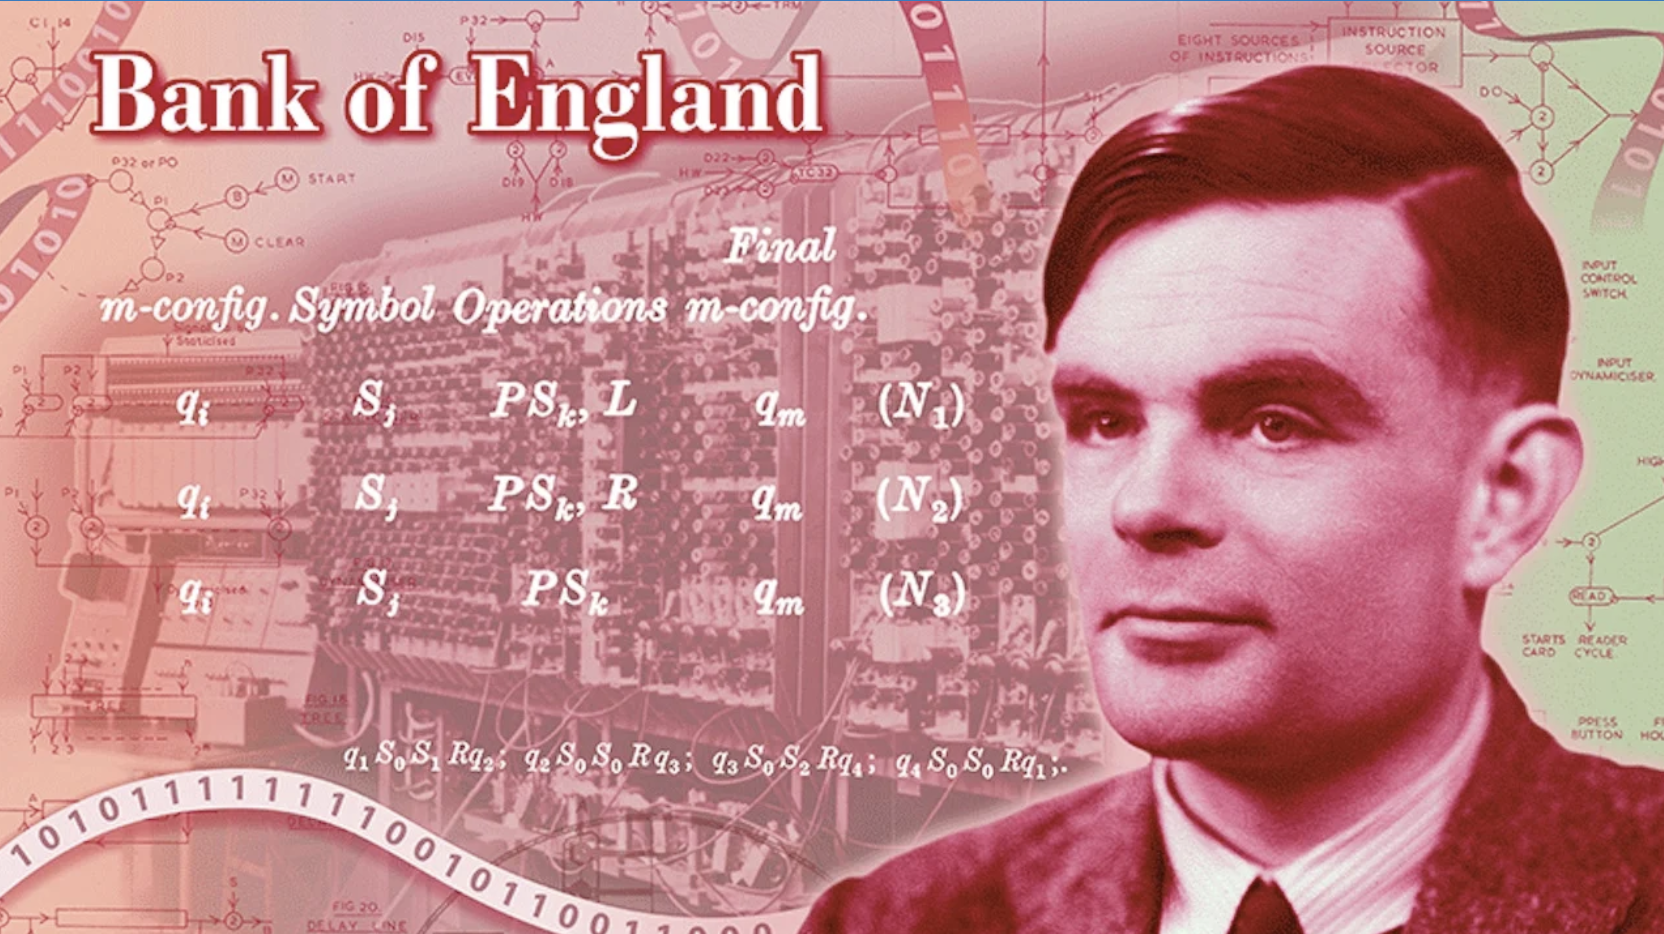 This week in science history: Alan Turing dies